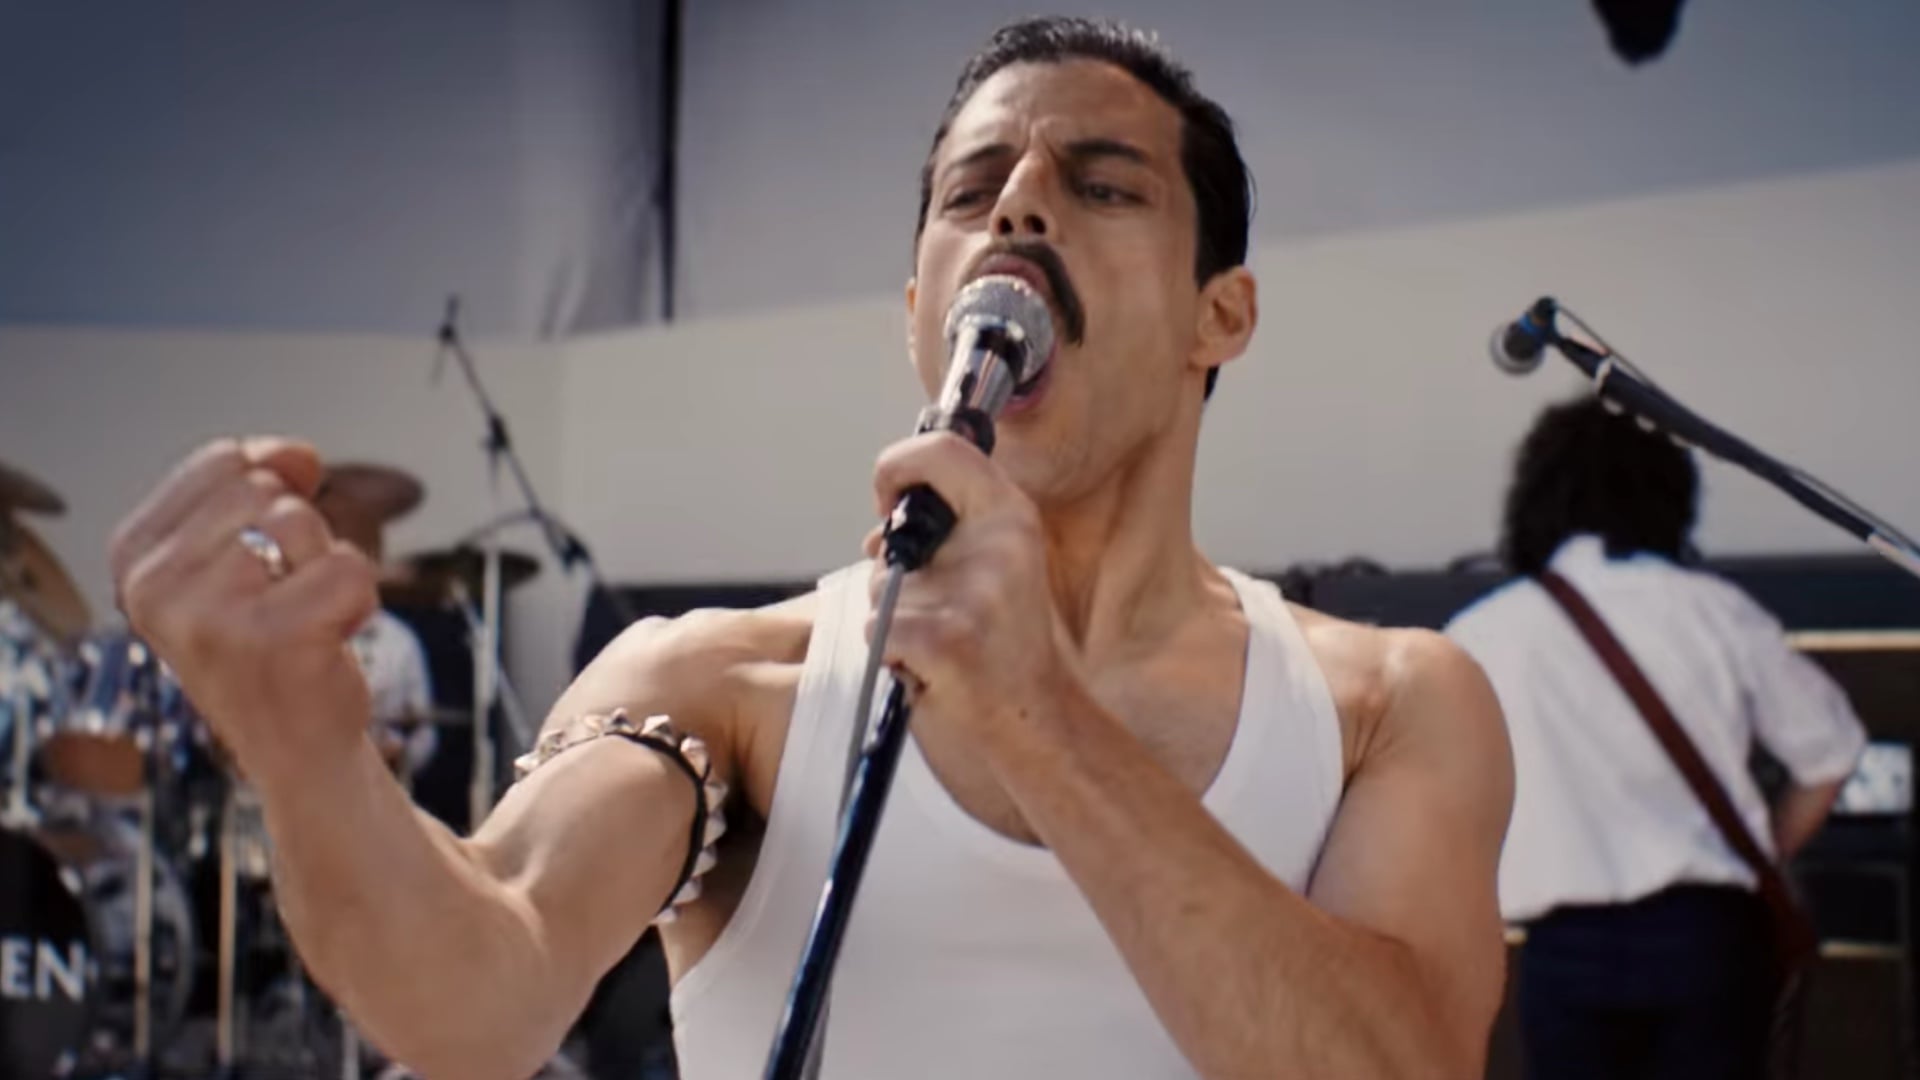 Bohemian Rhapsody - Trailer 2